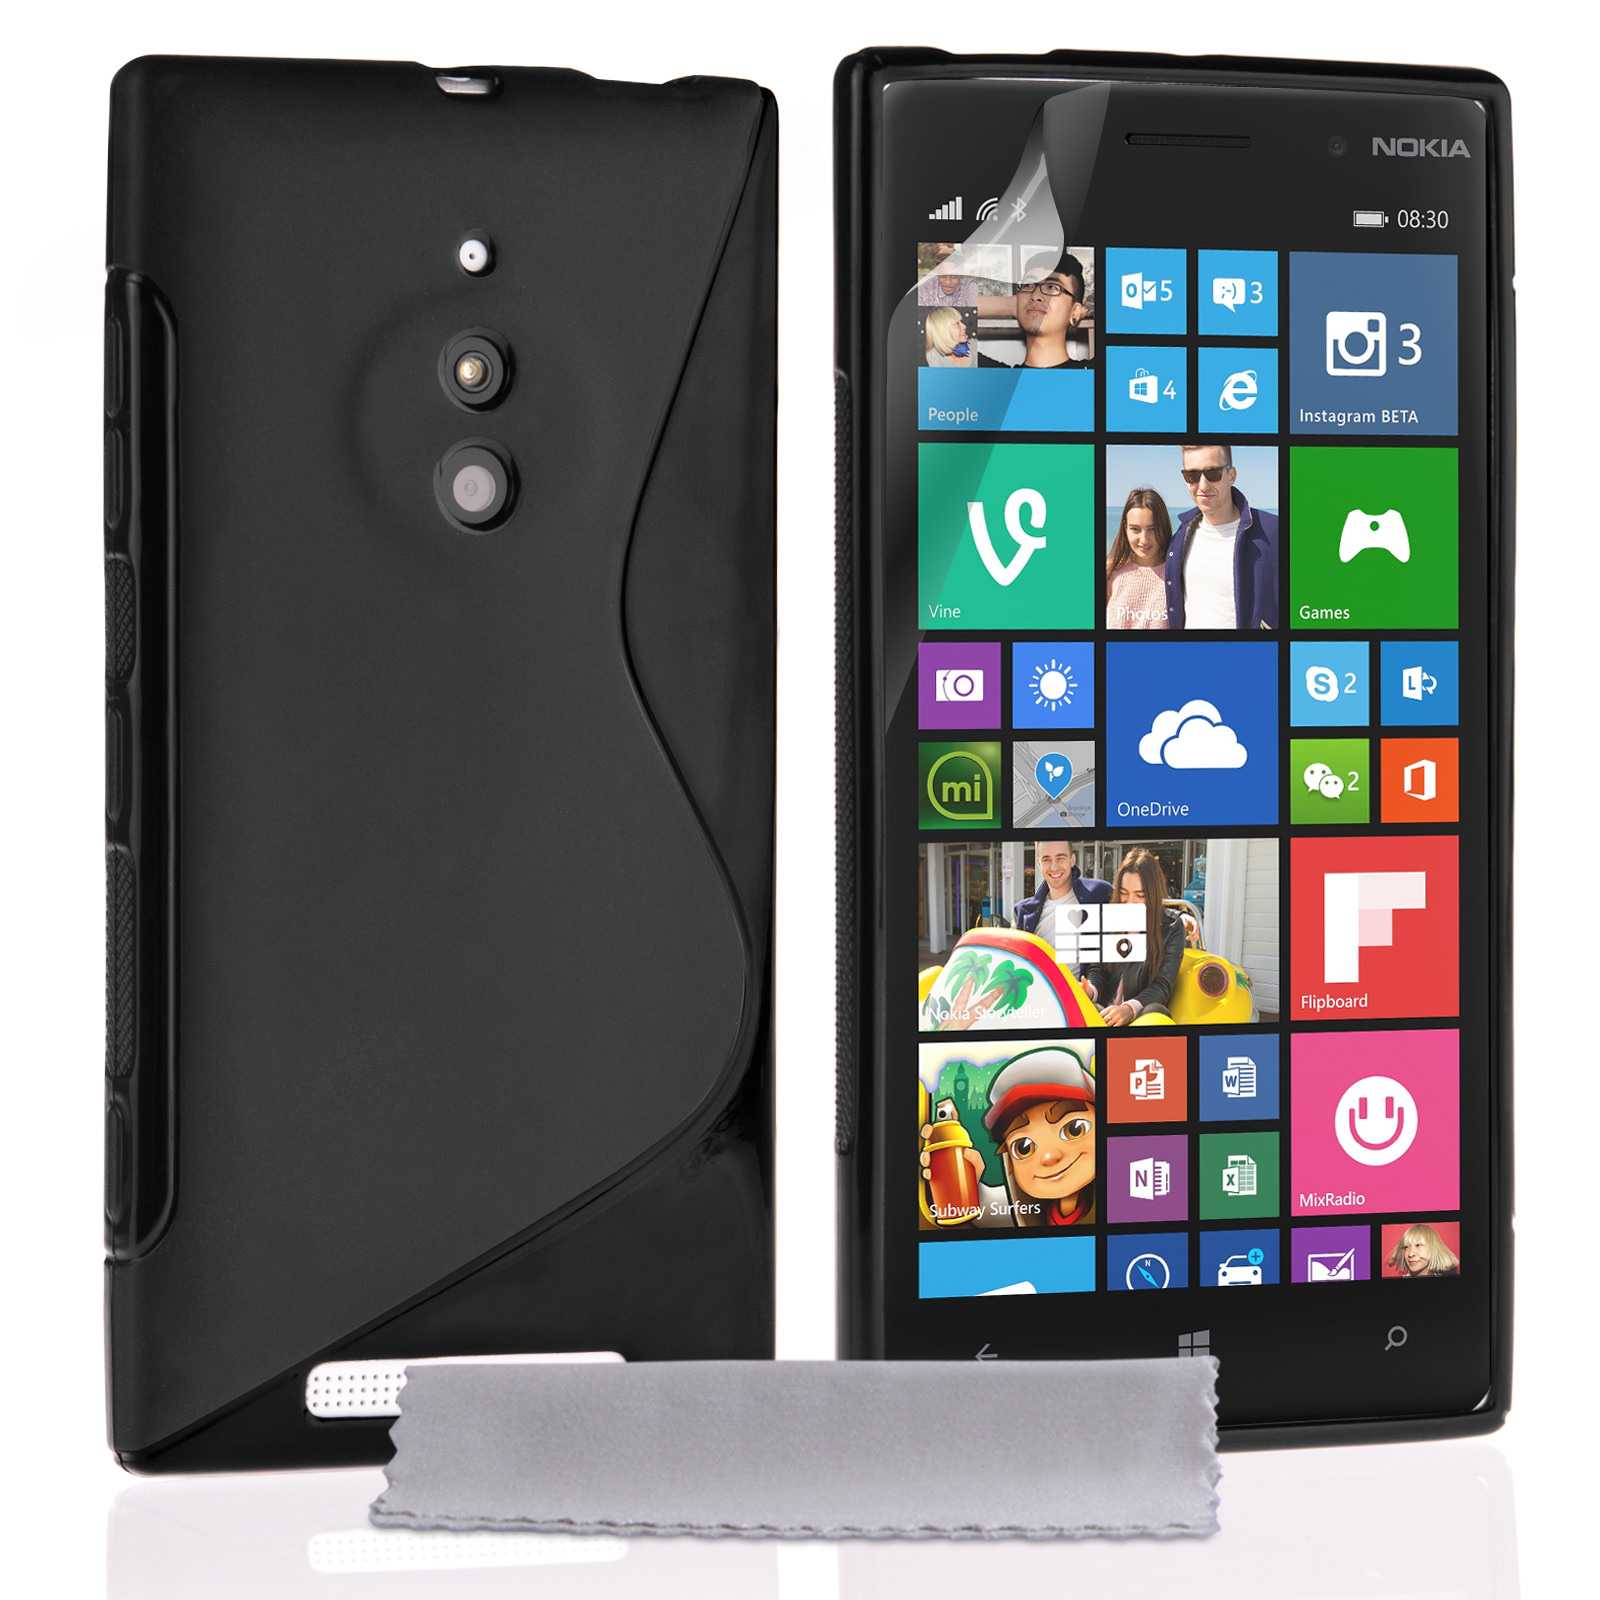 Nokia lumia 830 (черный) - купить , скидки, цена, отзывы, обзор, характеристики - мобильные телефоны